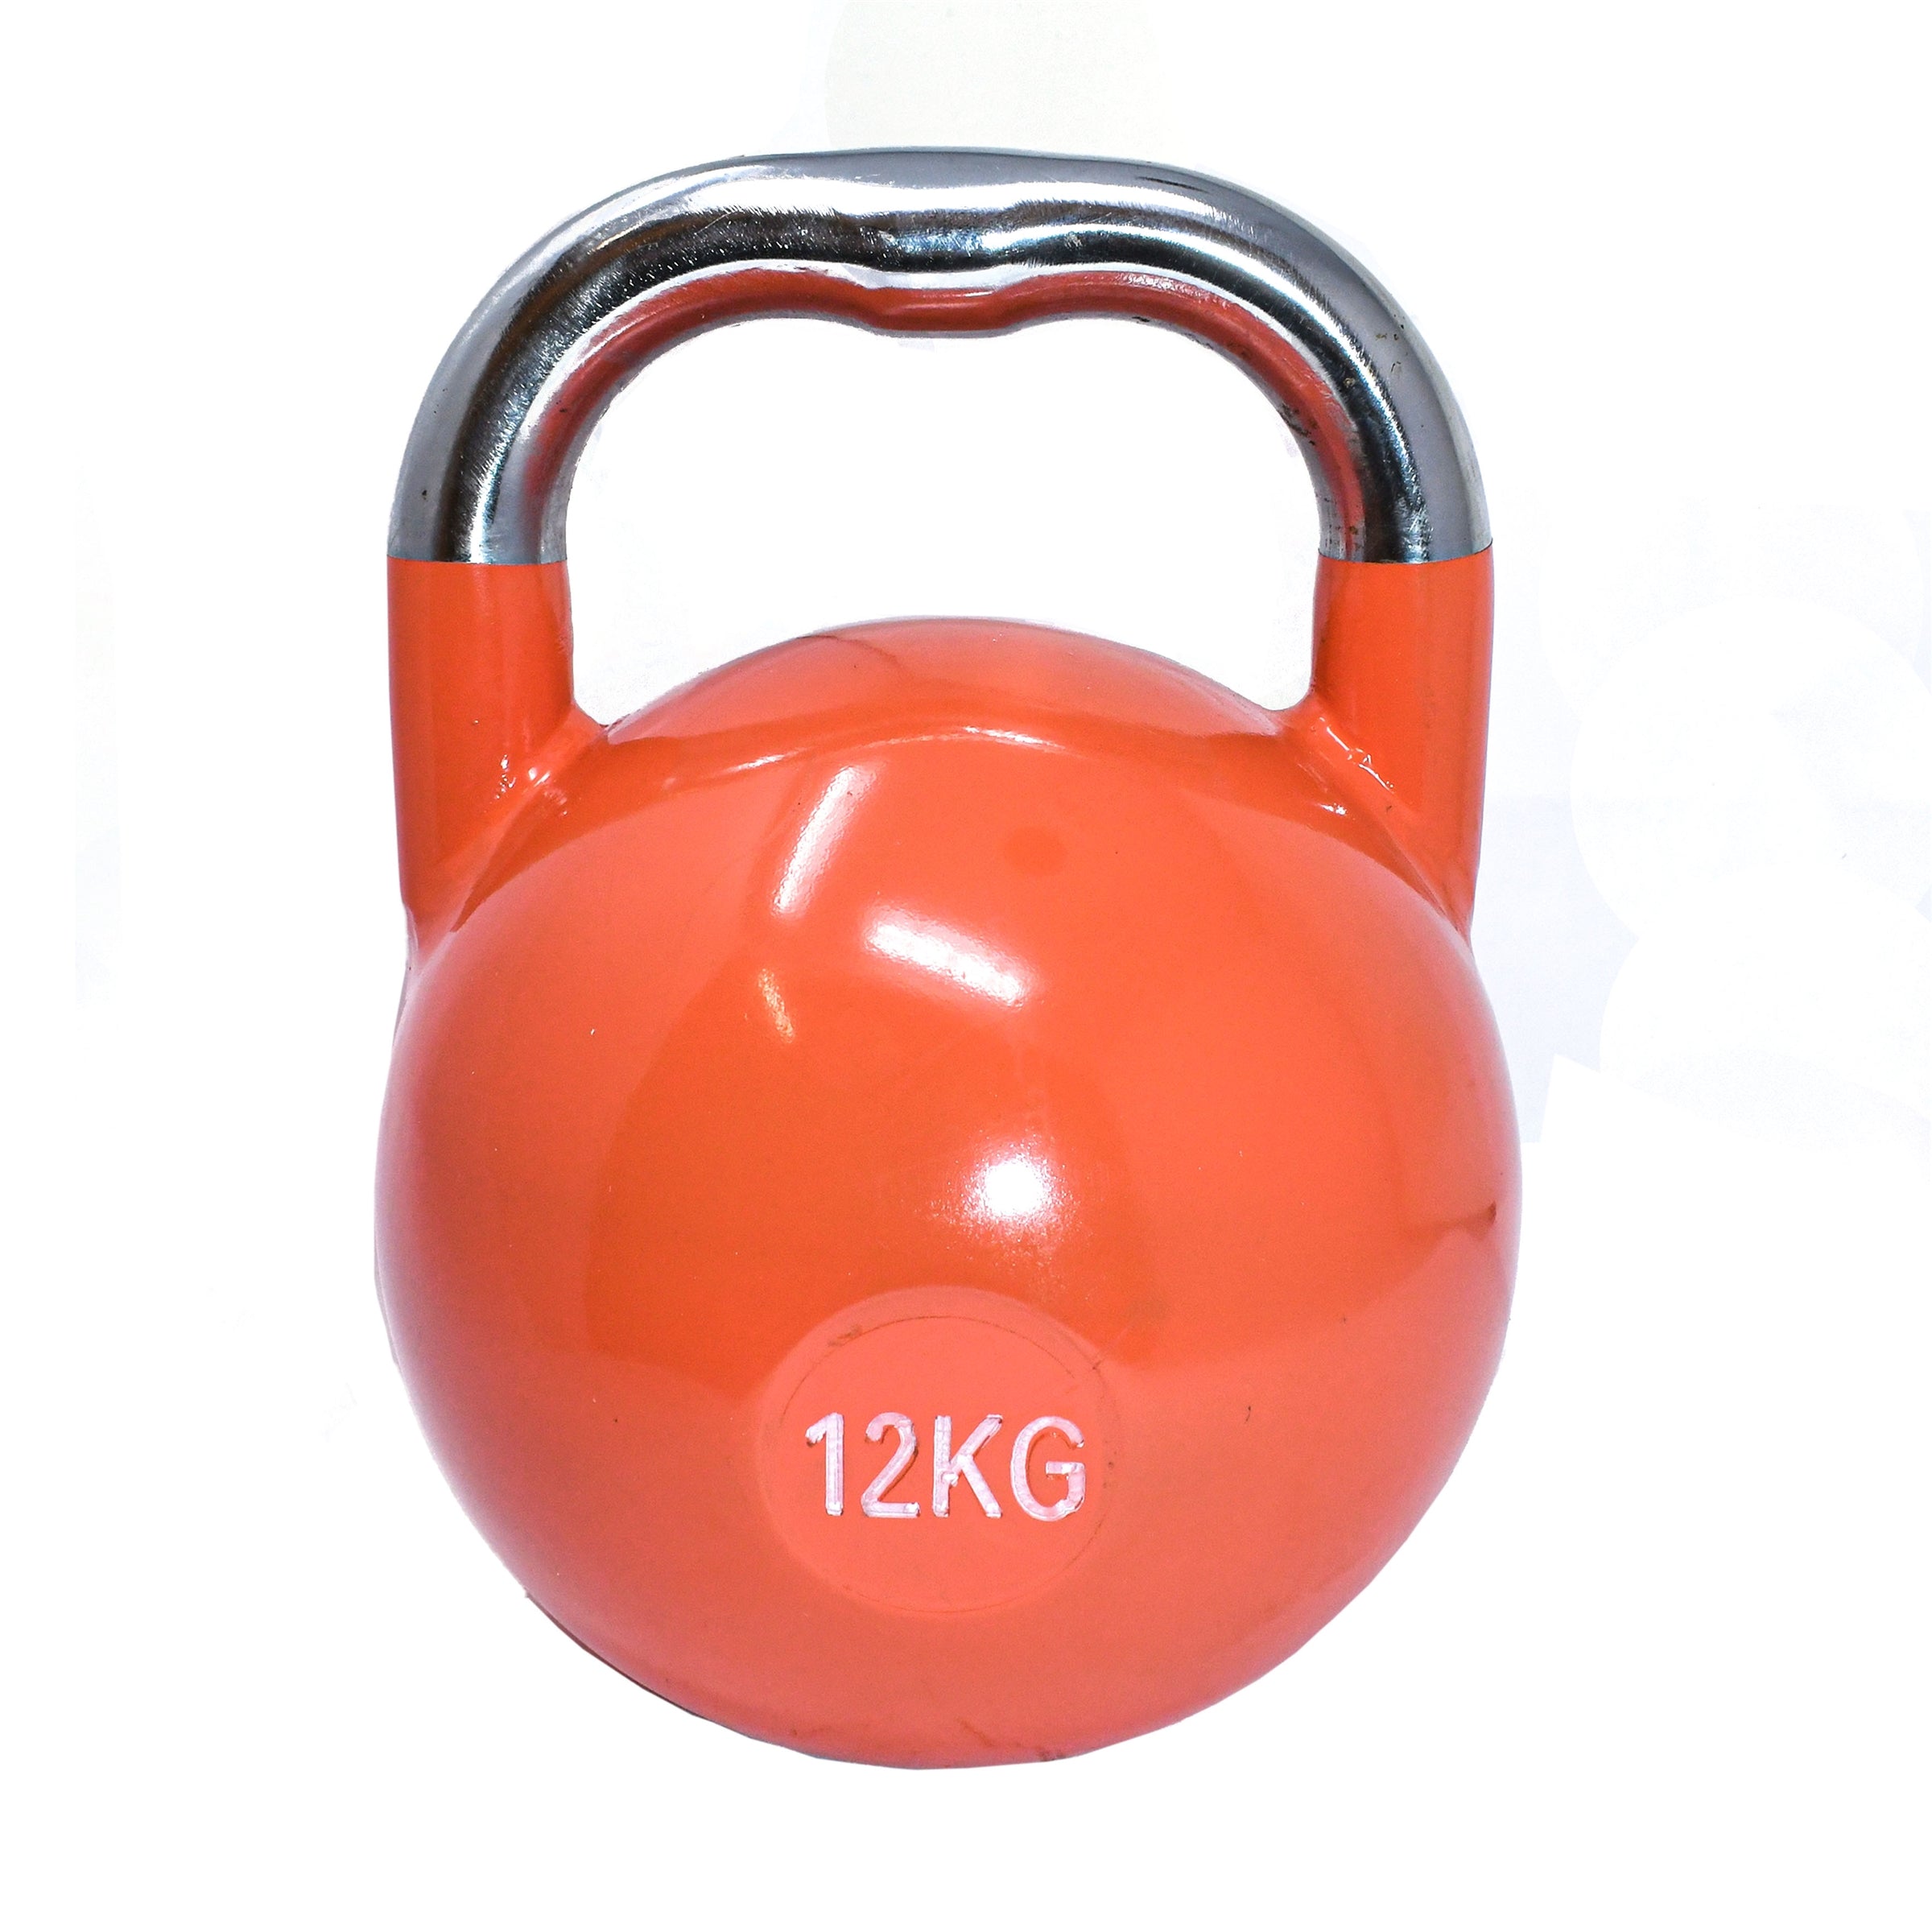 Premium Coated Steel Kettlebell - 26 lbs (12 kg) - Coral Orange